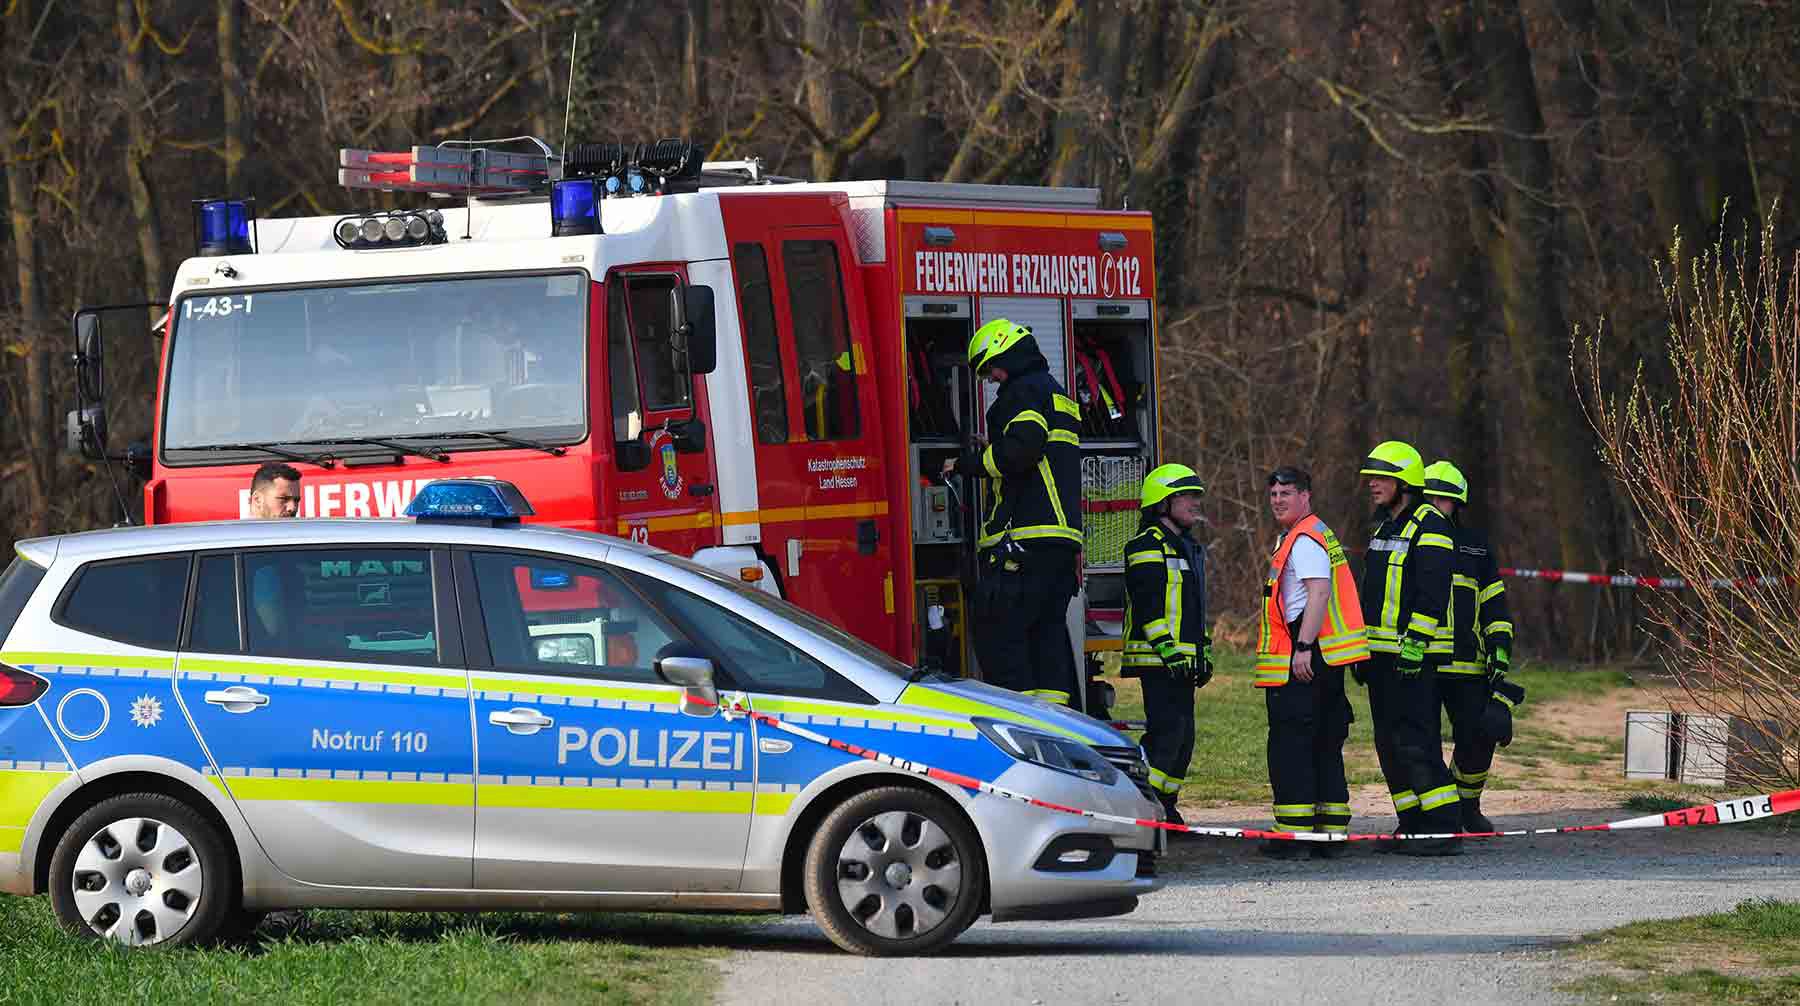 Dailystorm - В Германии подтвердили, что упавший самолет с совладелицей S7 ранее попадал в аварию